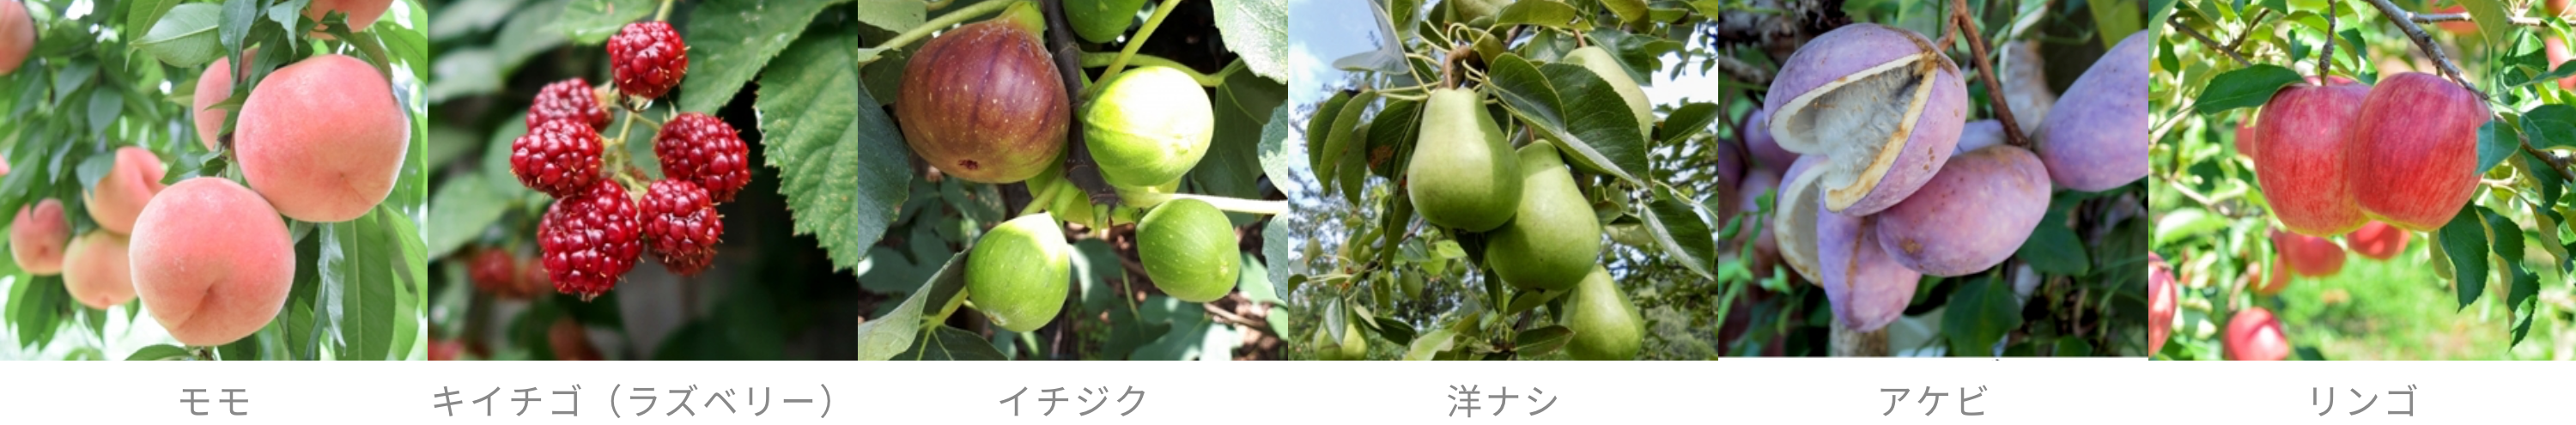 秋田県産の未完熟フルーツ